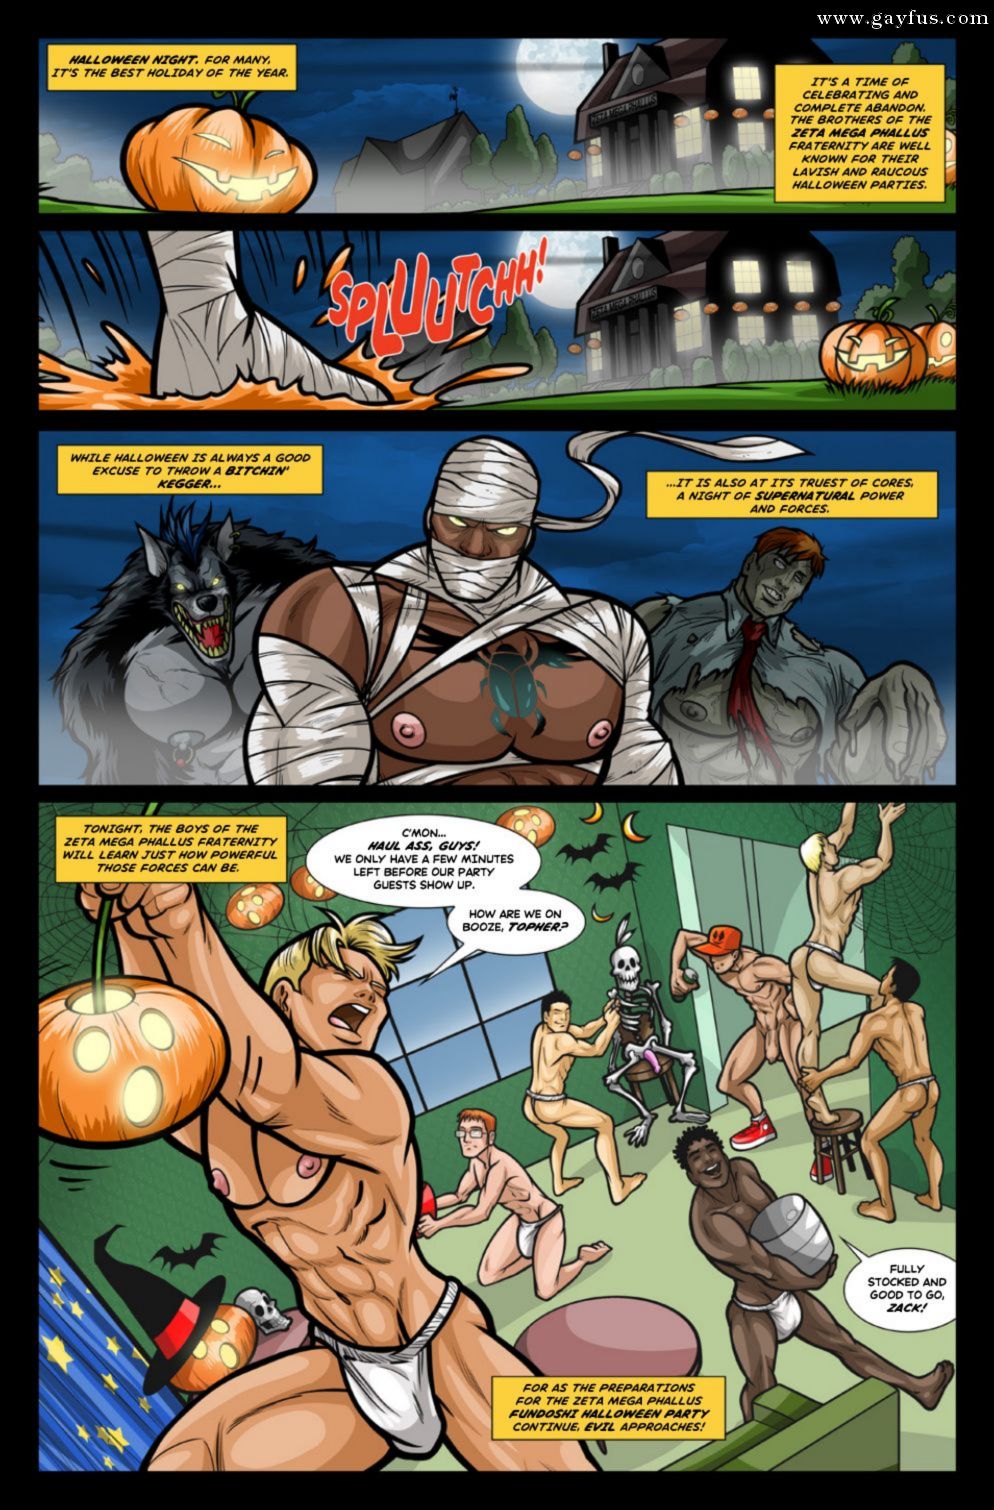 Supernatural Gay Cartoon Porn - Page 33 | David-Cantero/Class-Comics-Halloween-Hauntings | Gayfus - Gay Sex  and Porn Comics